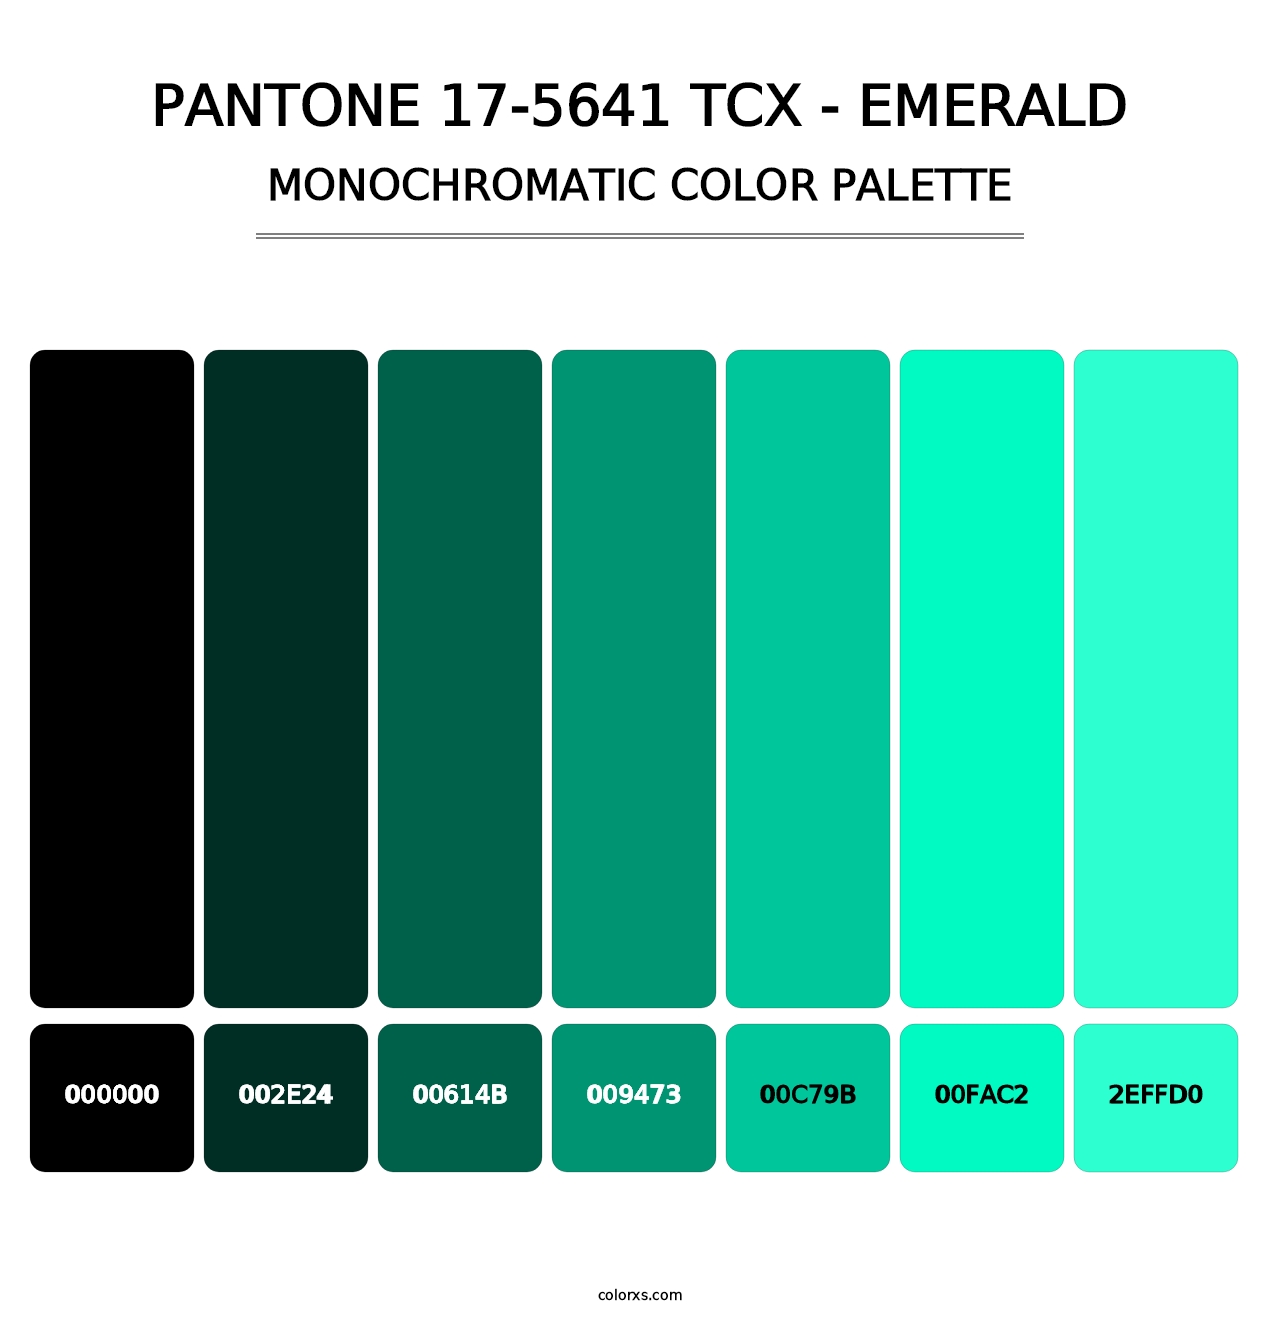 PANTONE 17-5641 TCX - Emerald - Monochromatic Color Palette